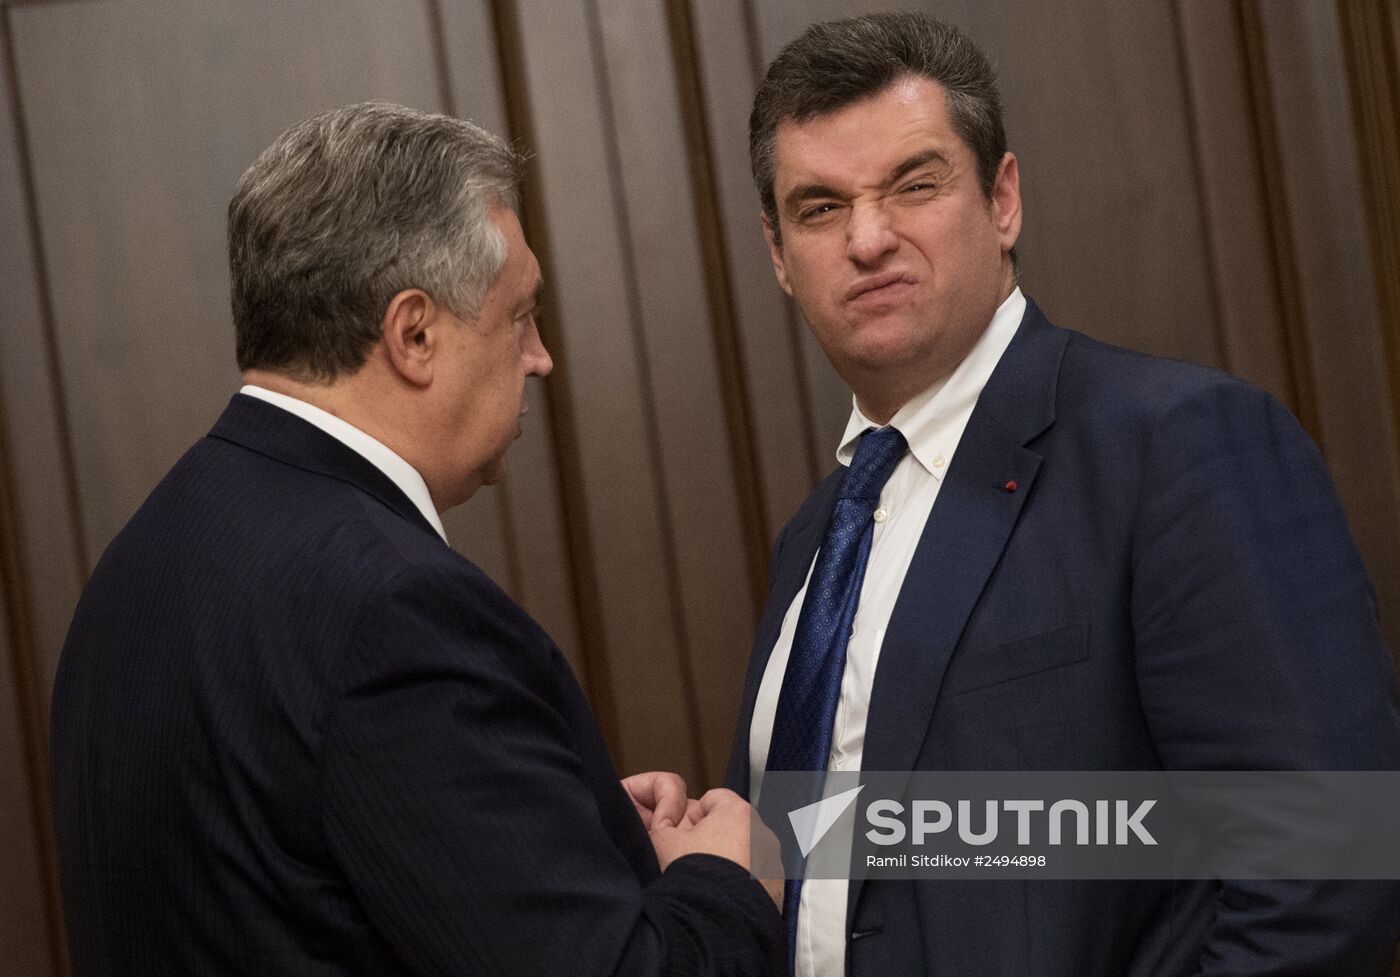 Russian State Duma Speaker Sergei Naryshkin meets with Ukraine's Verkhovna Rada deputies